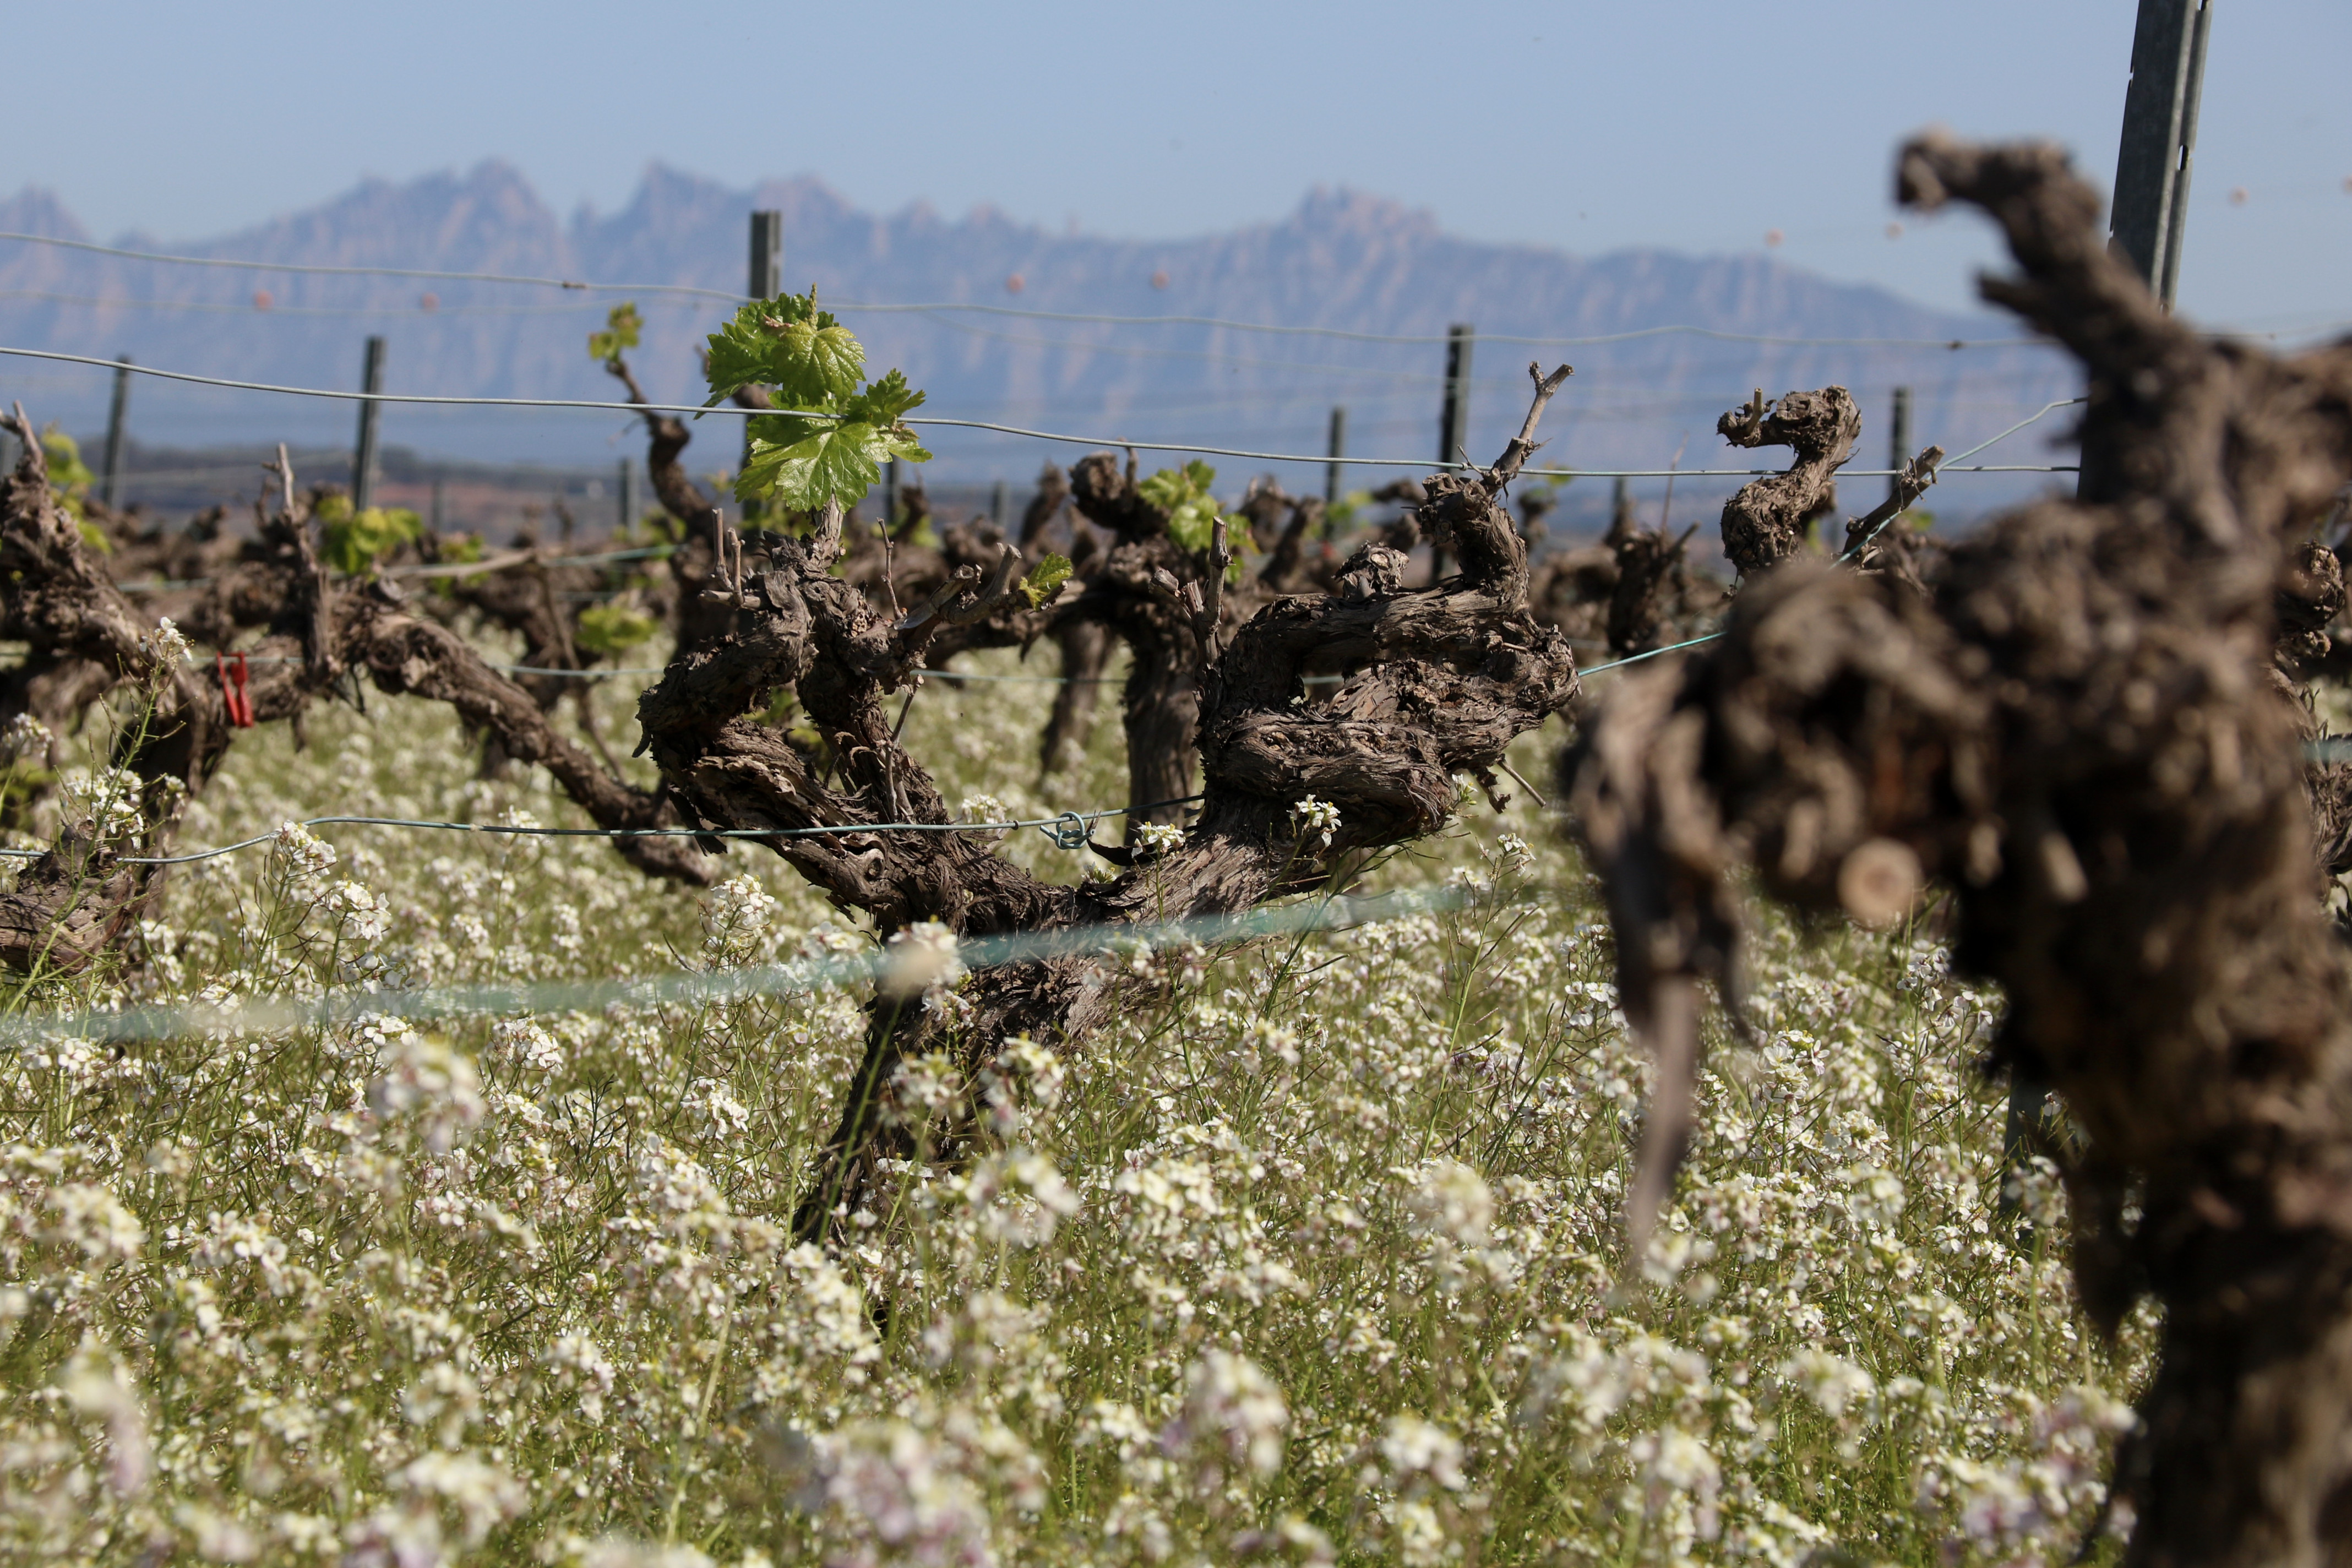 Pagesos i vinicultors constaten una “mortaldat important” a les vinyes del Penedès tot i les últimes pluges